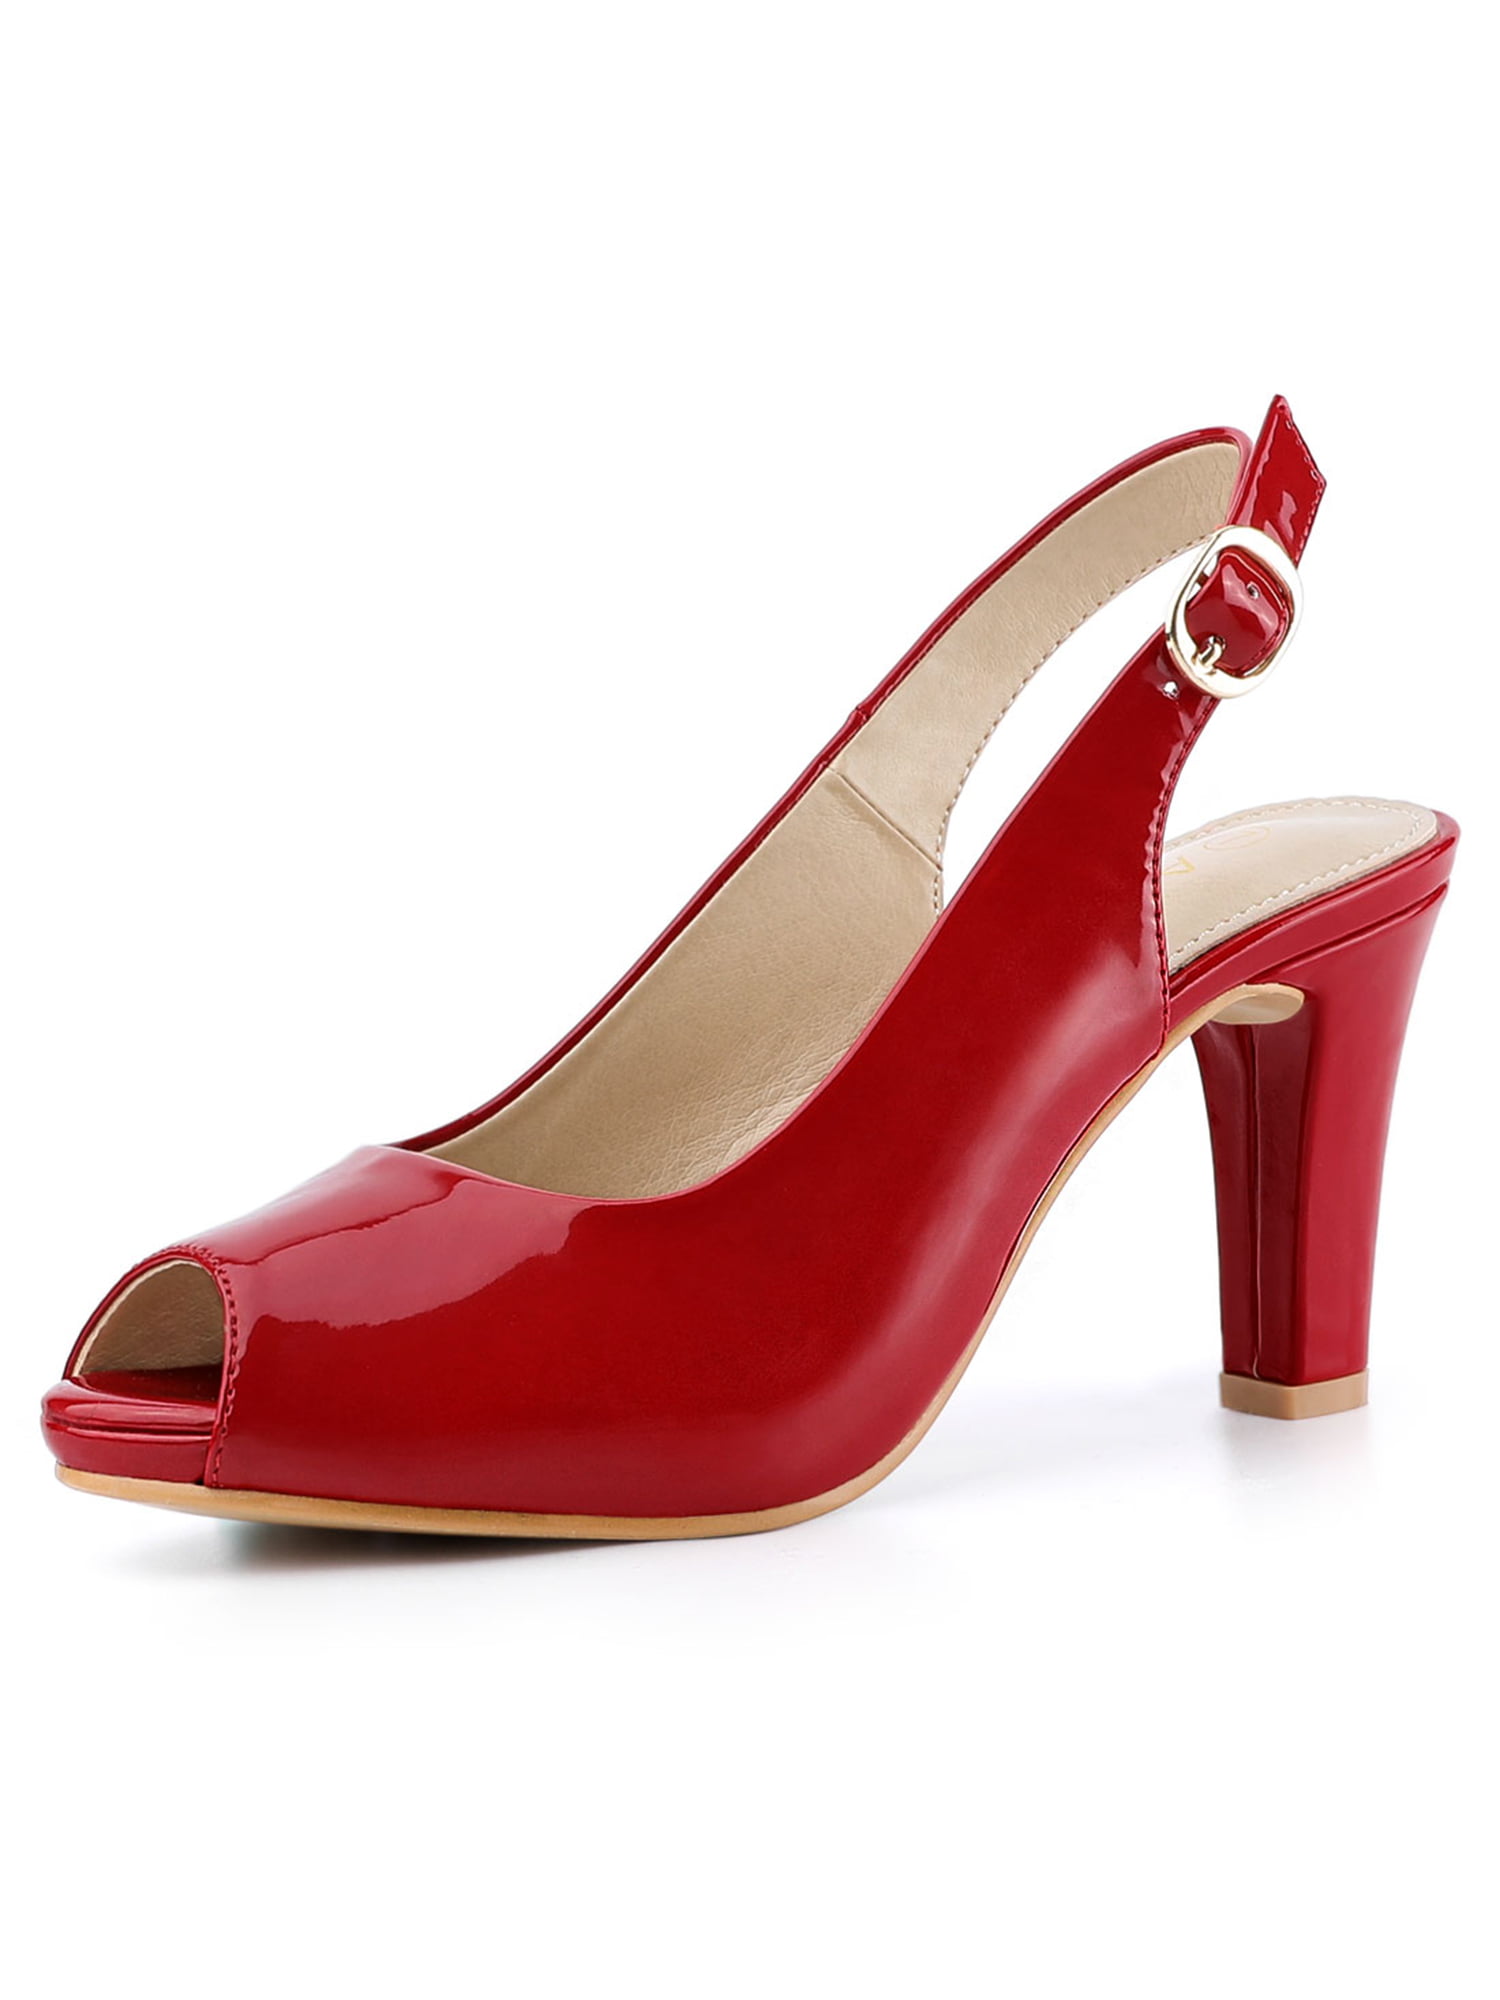 red closed toe block heels